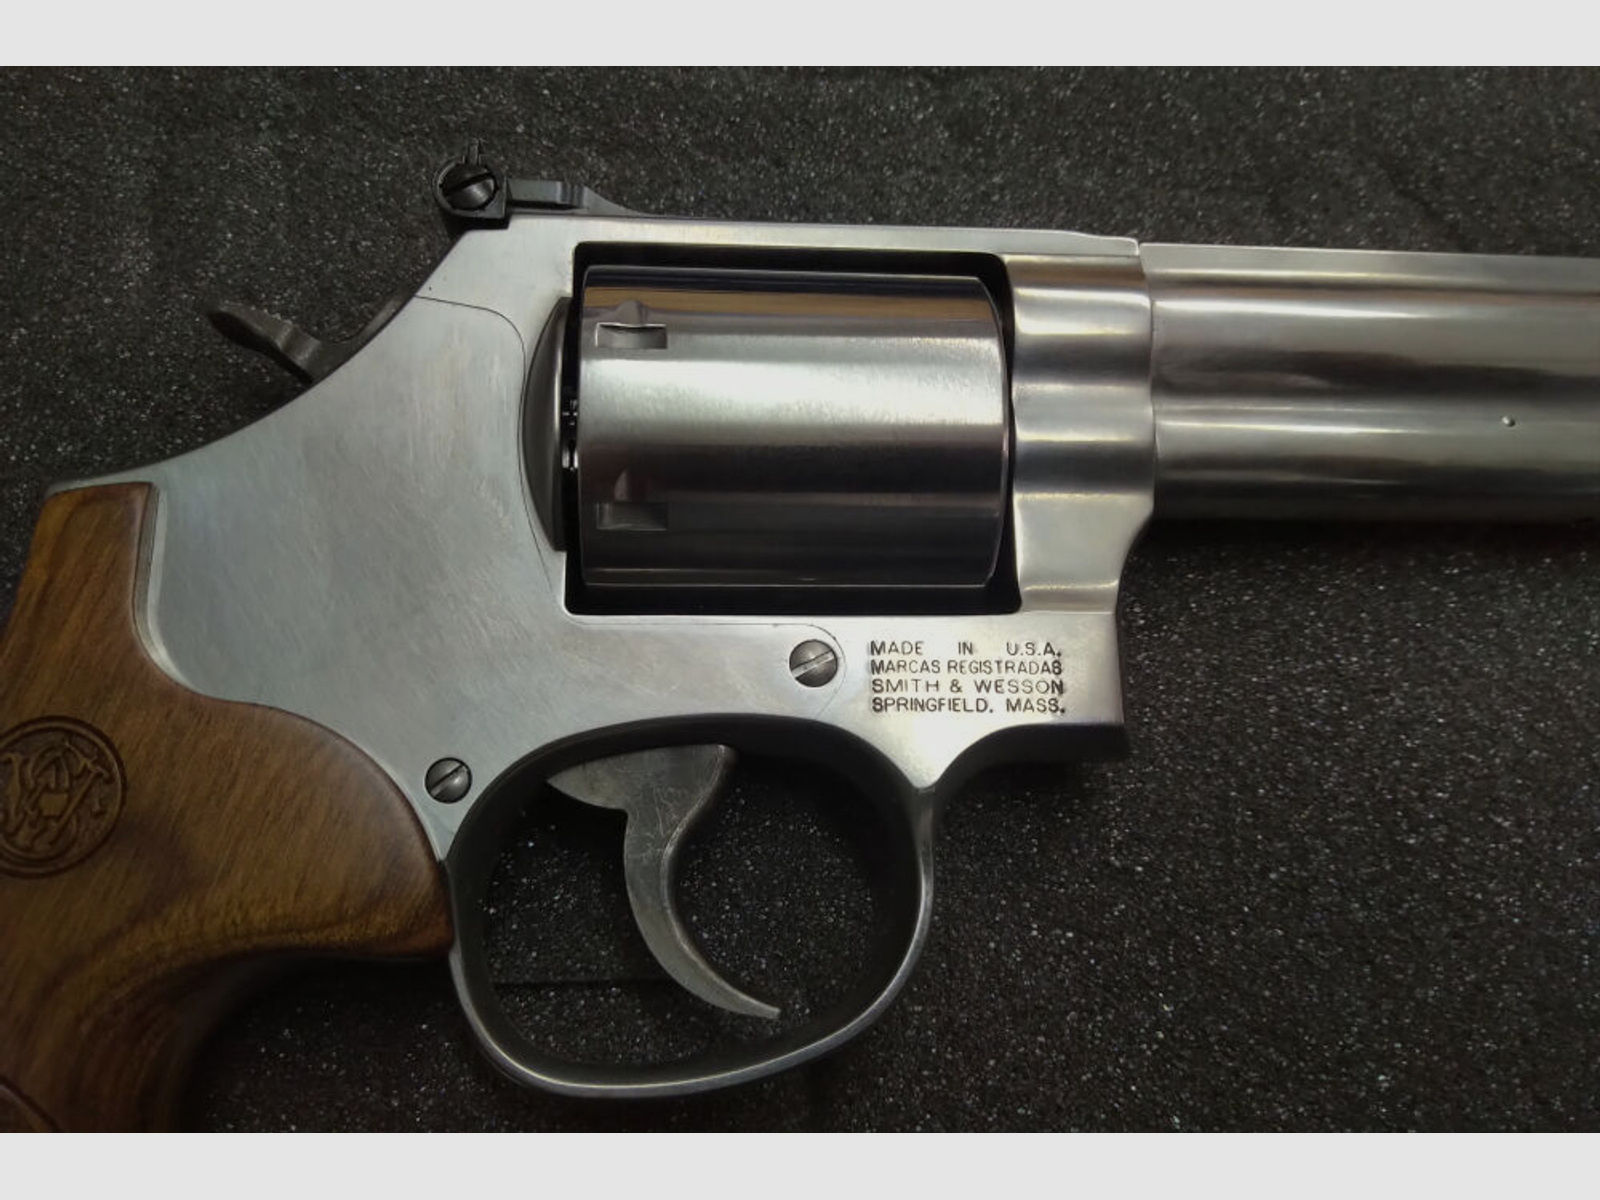 Smith & Wesson	 686 Plus 3.5.7 Magnum 7"